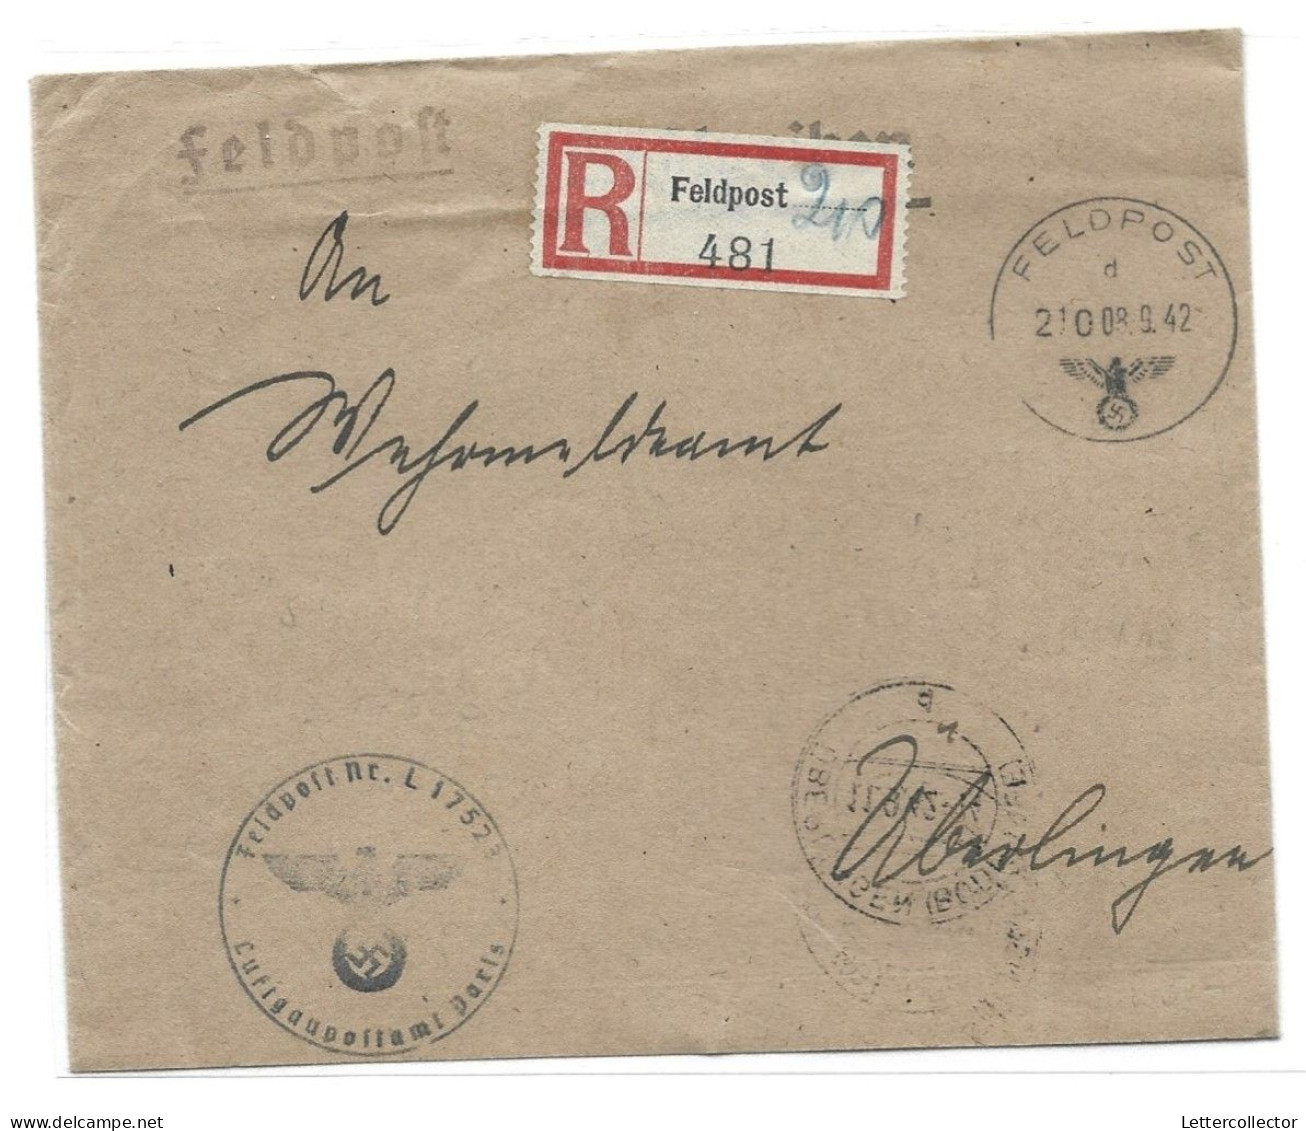 Feldpost Einschreiben Lannion Bretagne Frankreich Fliegerhorst 1942 - Feldpost World War II